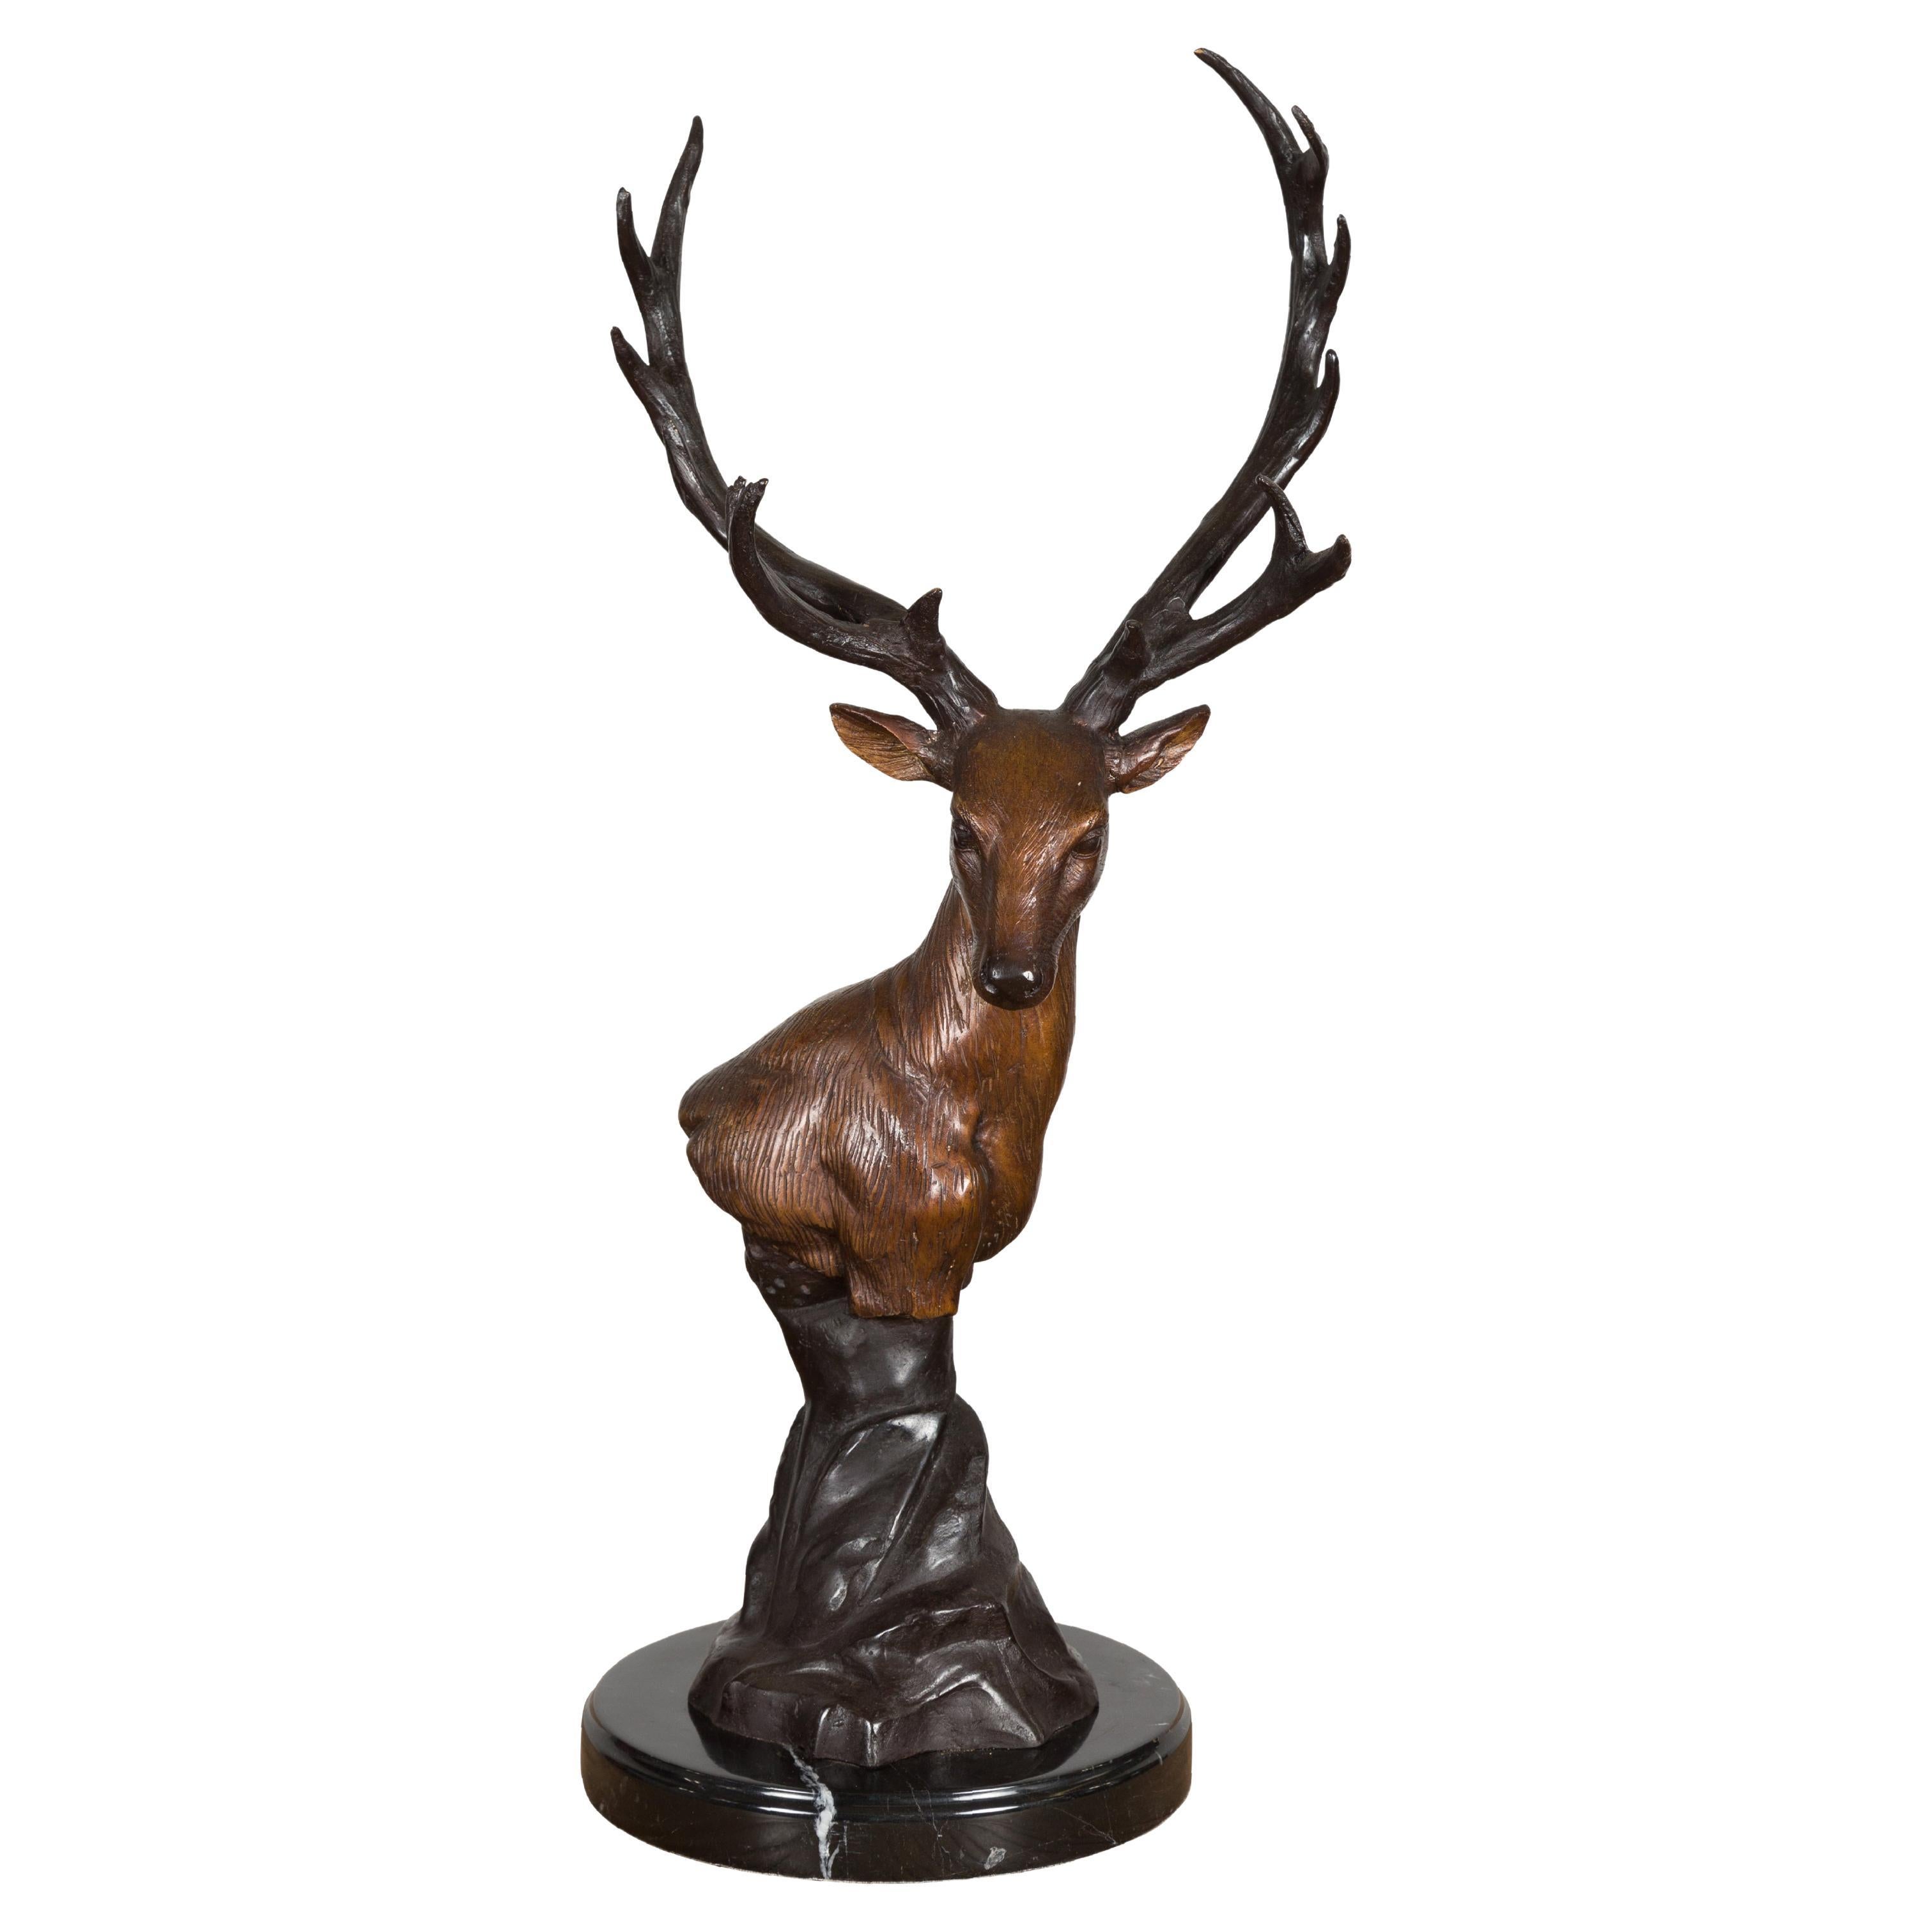 Skulptur eines Hirschkopfes aus Bronze auf Marmorsockel, hergestellt mit Wachsausschmelztechnik